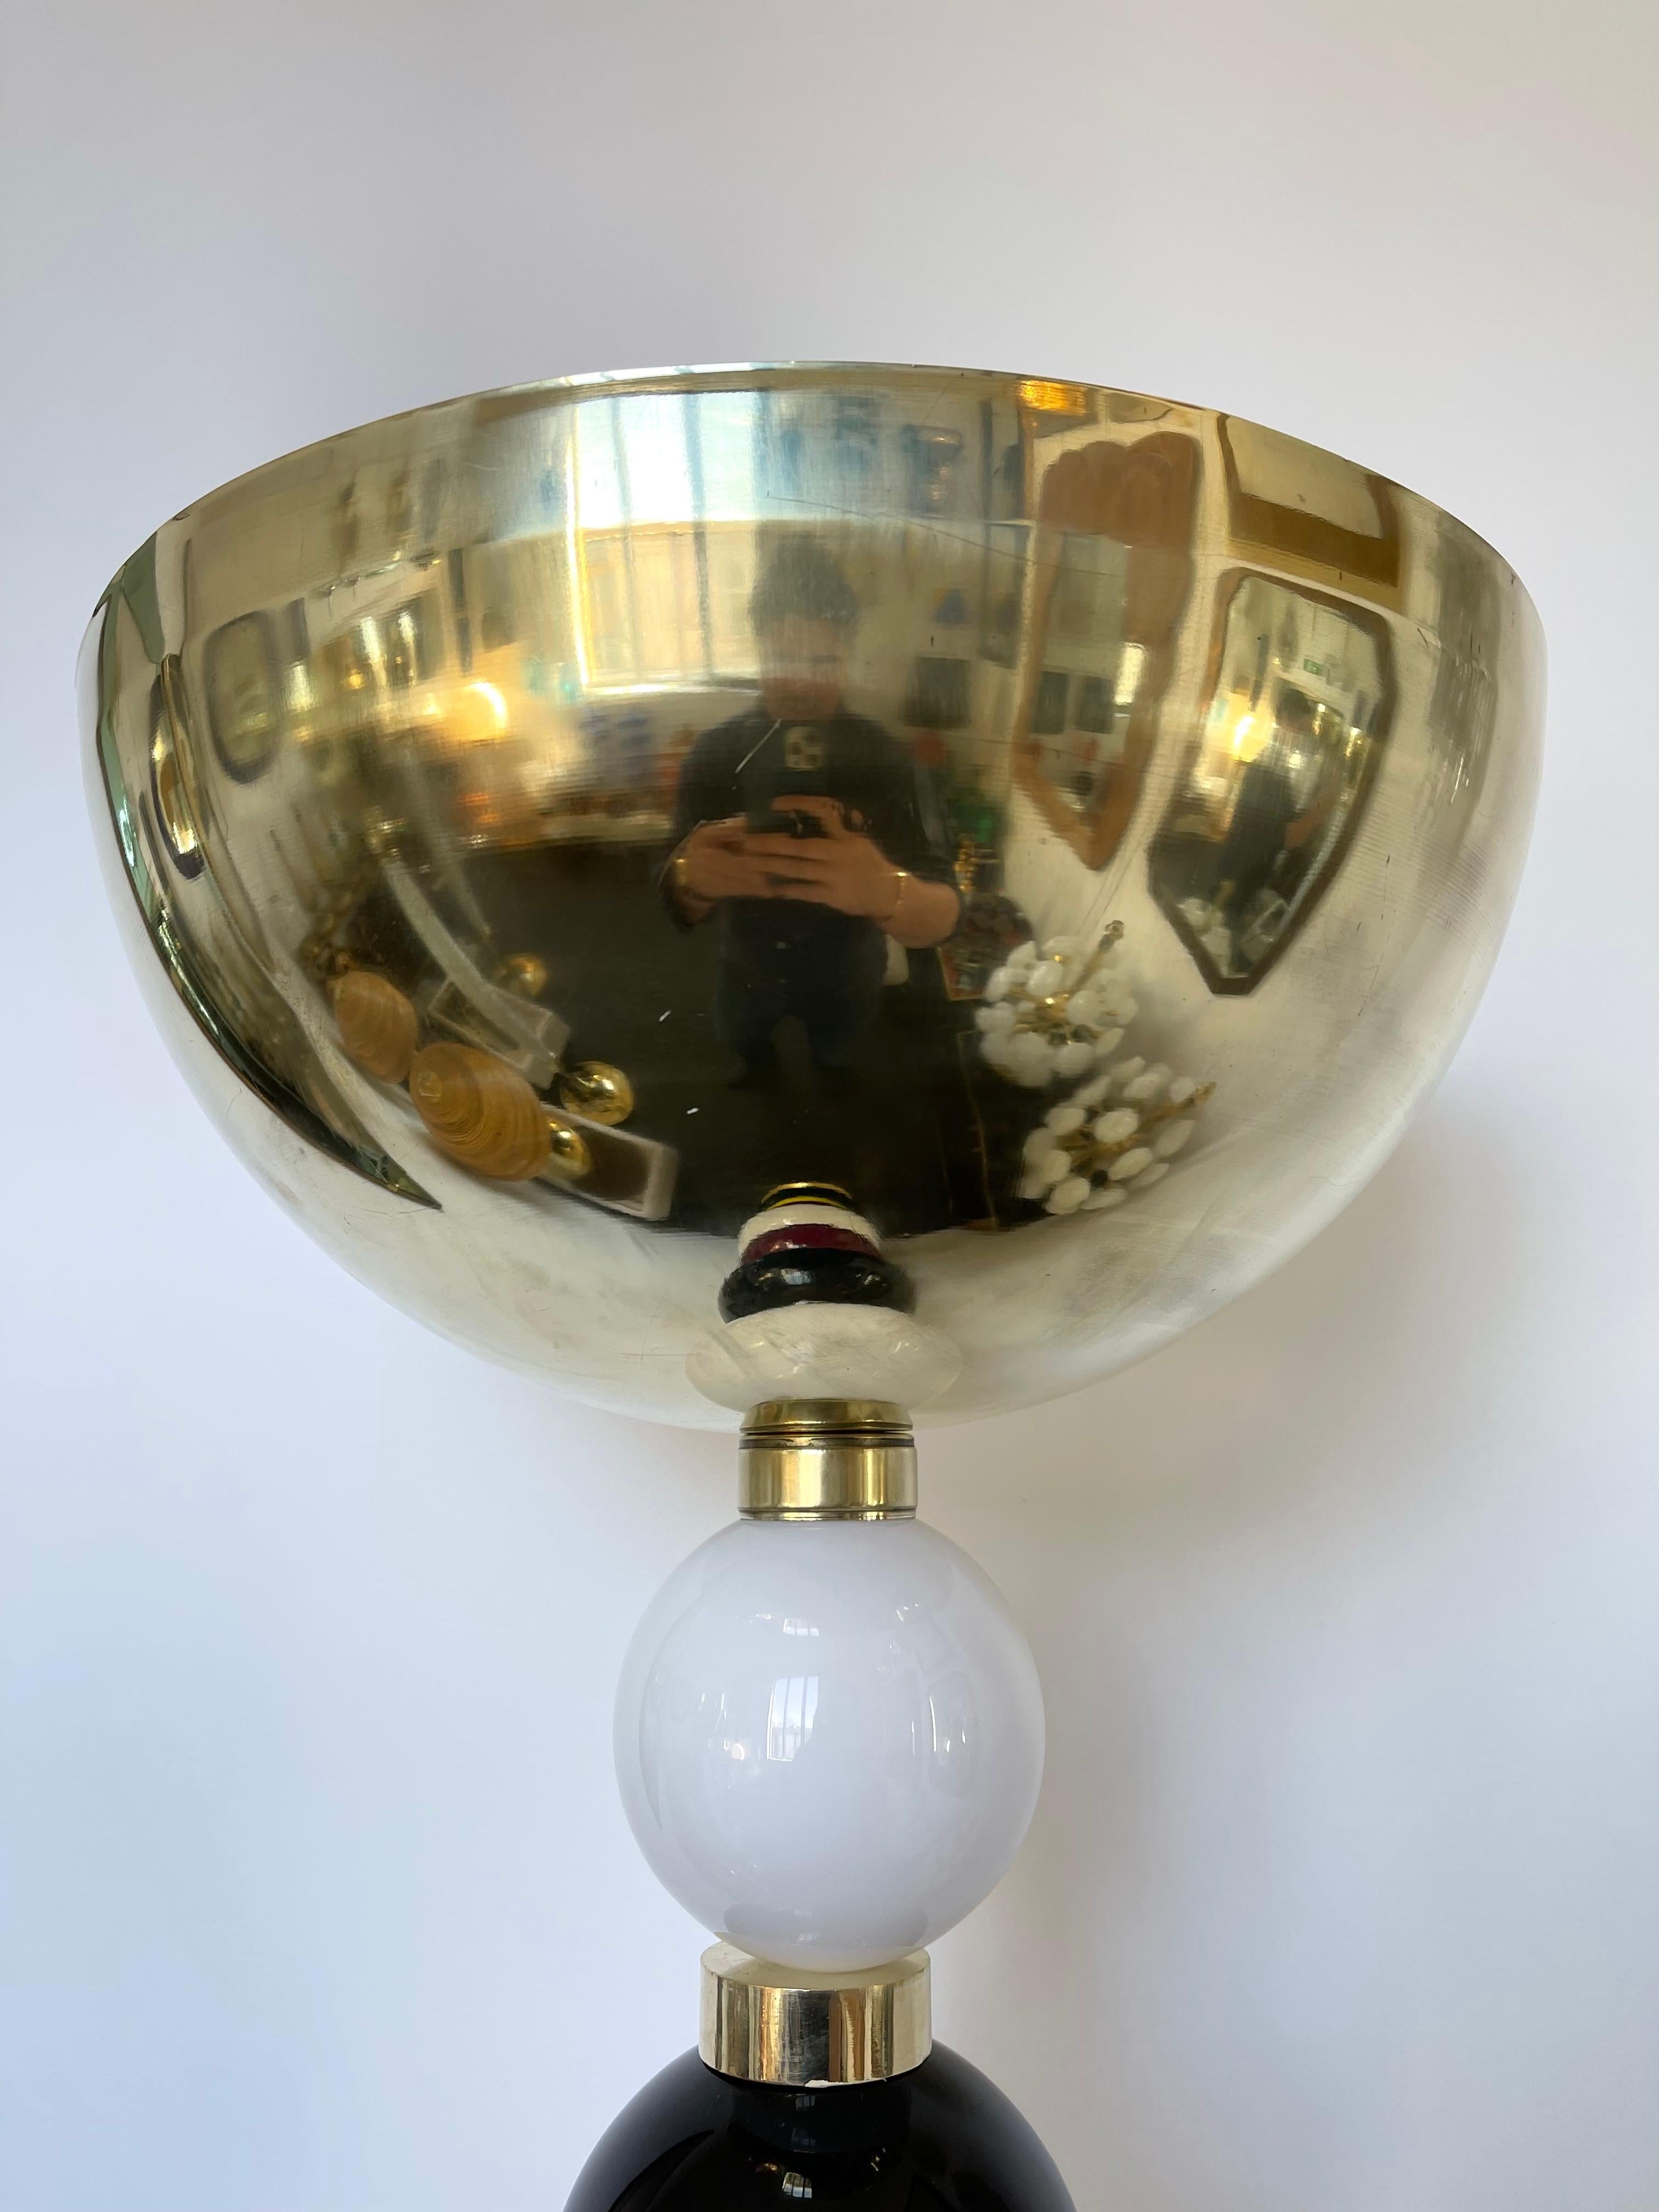 Messing Stehlampe mit Farbe Atomo Ball Murano Glas, große volle Messing Schatten, schönes Holz Detail auf Basis. Zeitgenössische Arbeiten aus einem kleinen italienischen Handwerksbetrieb. In der Stimmung von Venini, Mazzega, La murrina, Veronese,